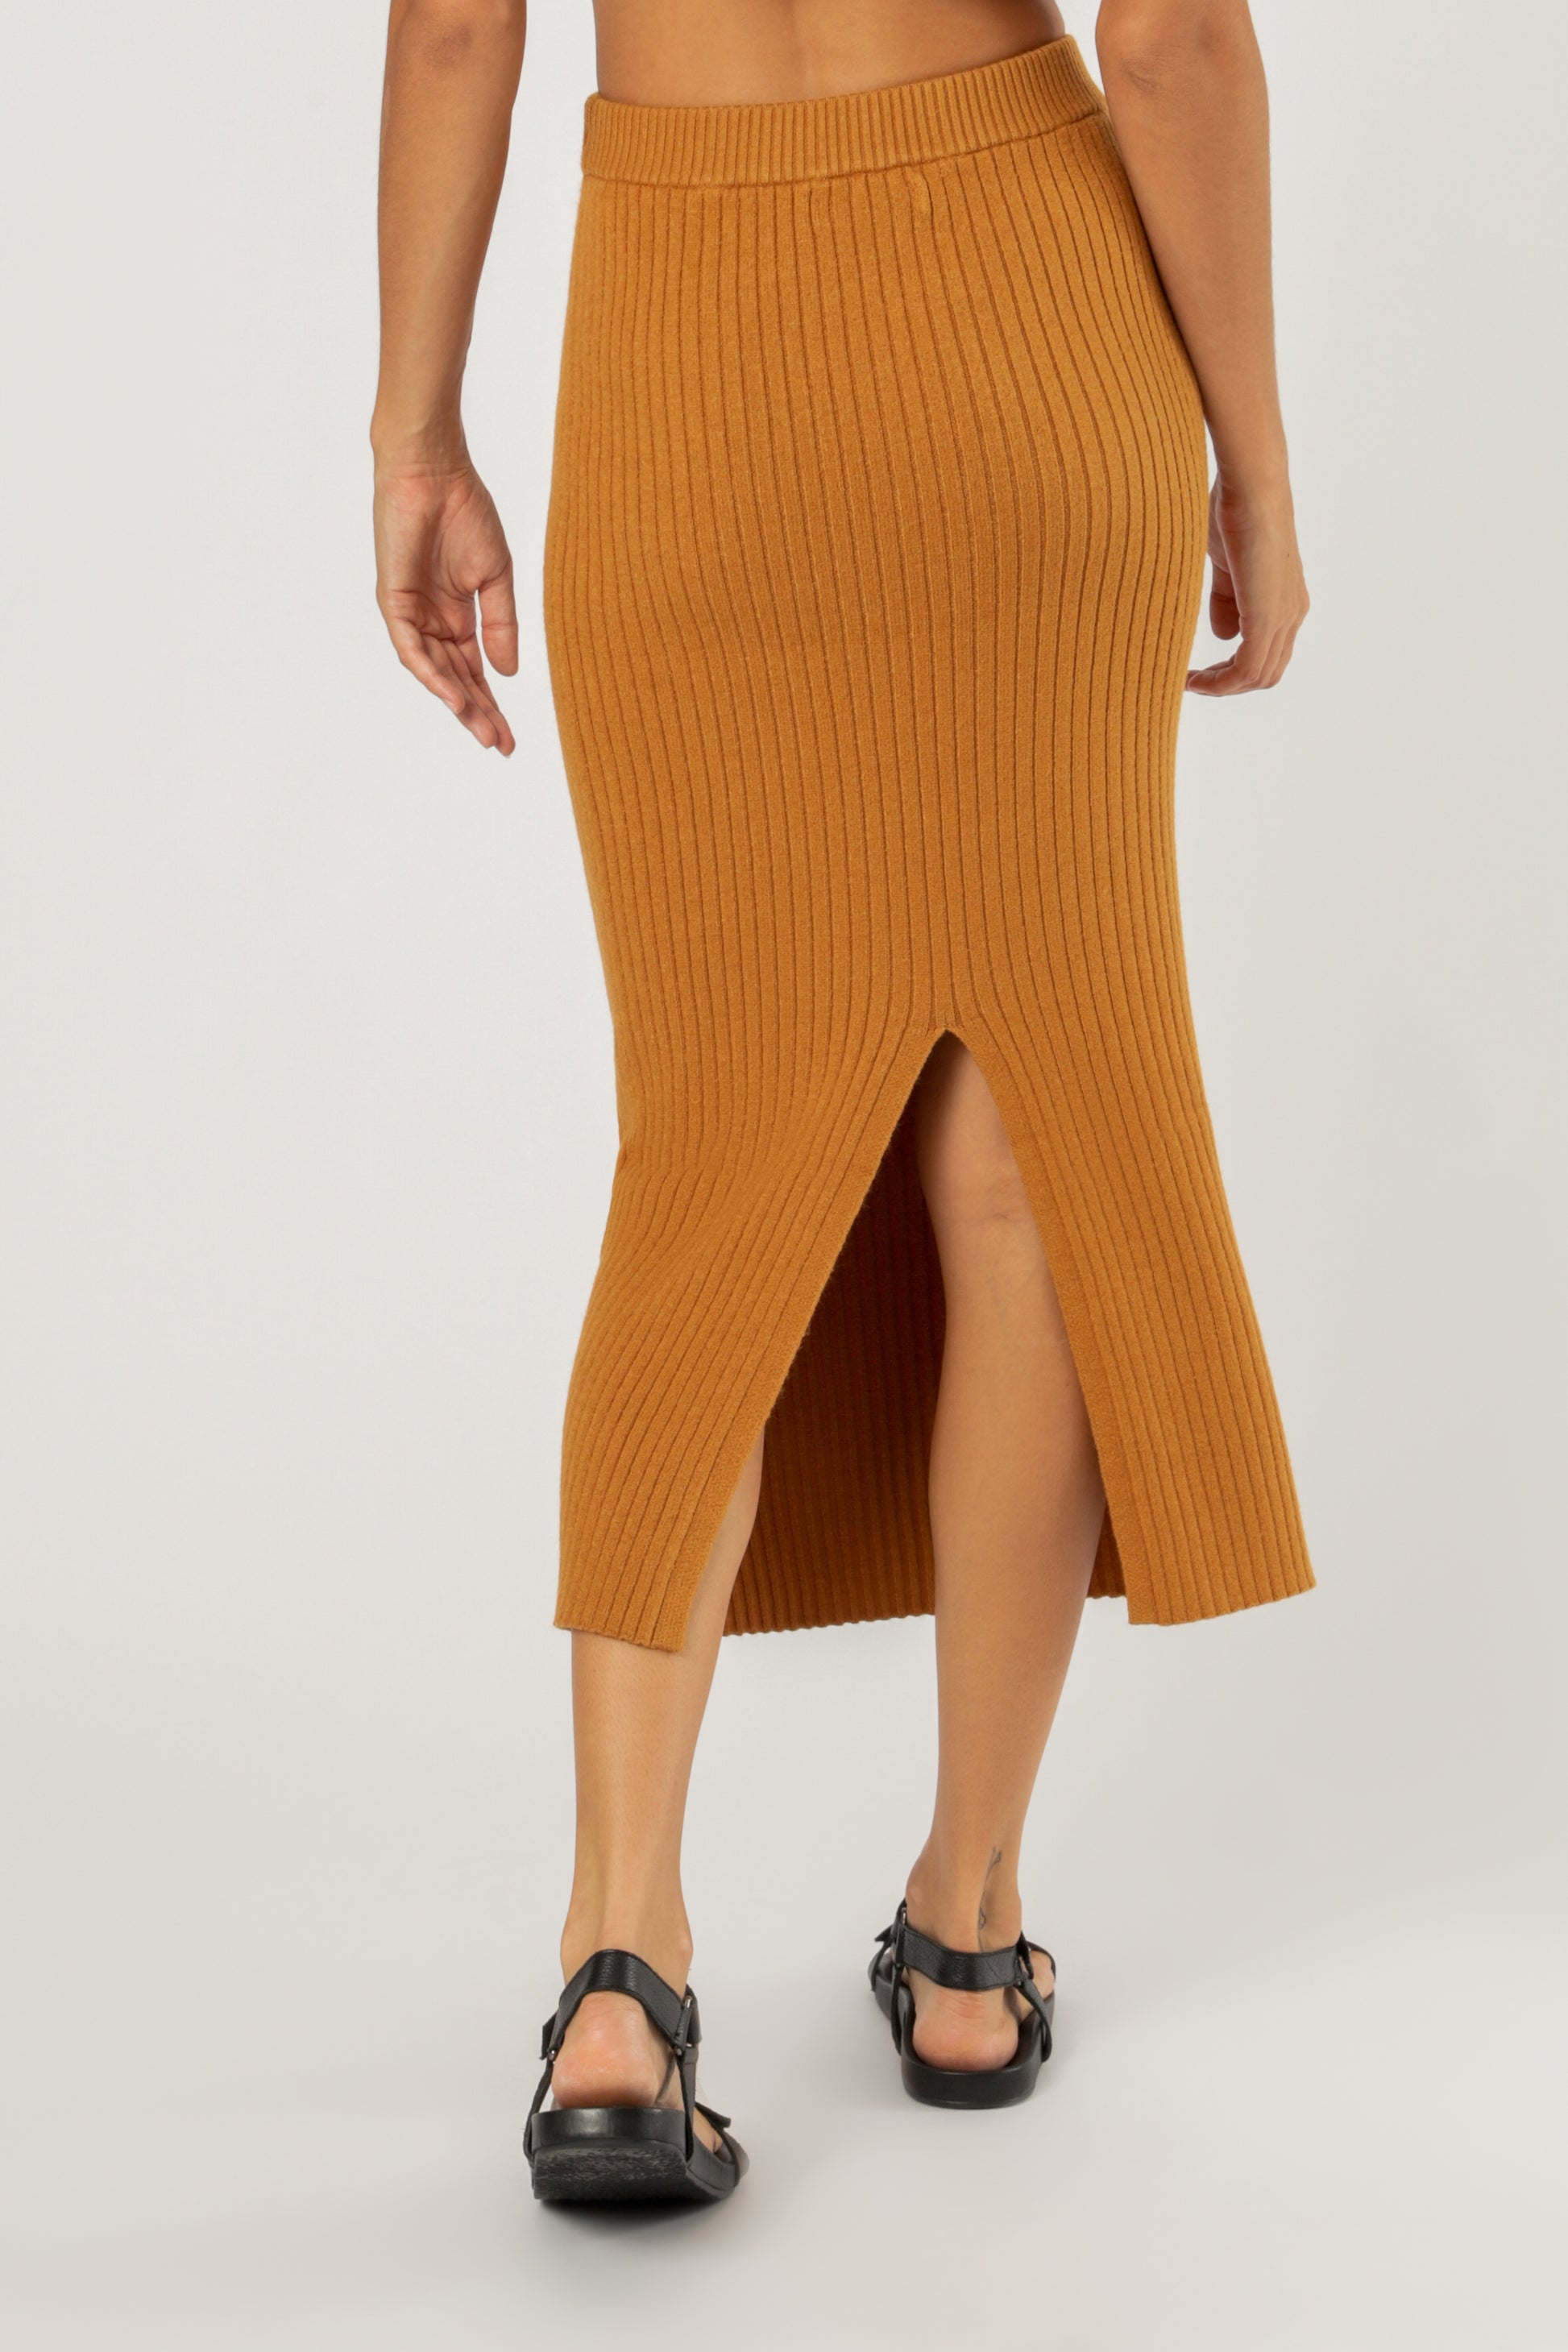 Nude Lucy Dylan Knit Skirt Deep Mustard Skirt 